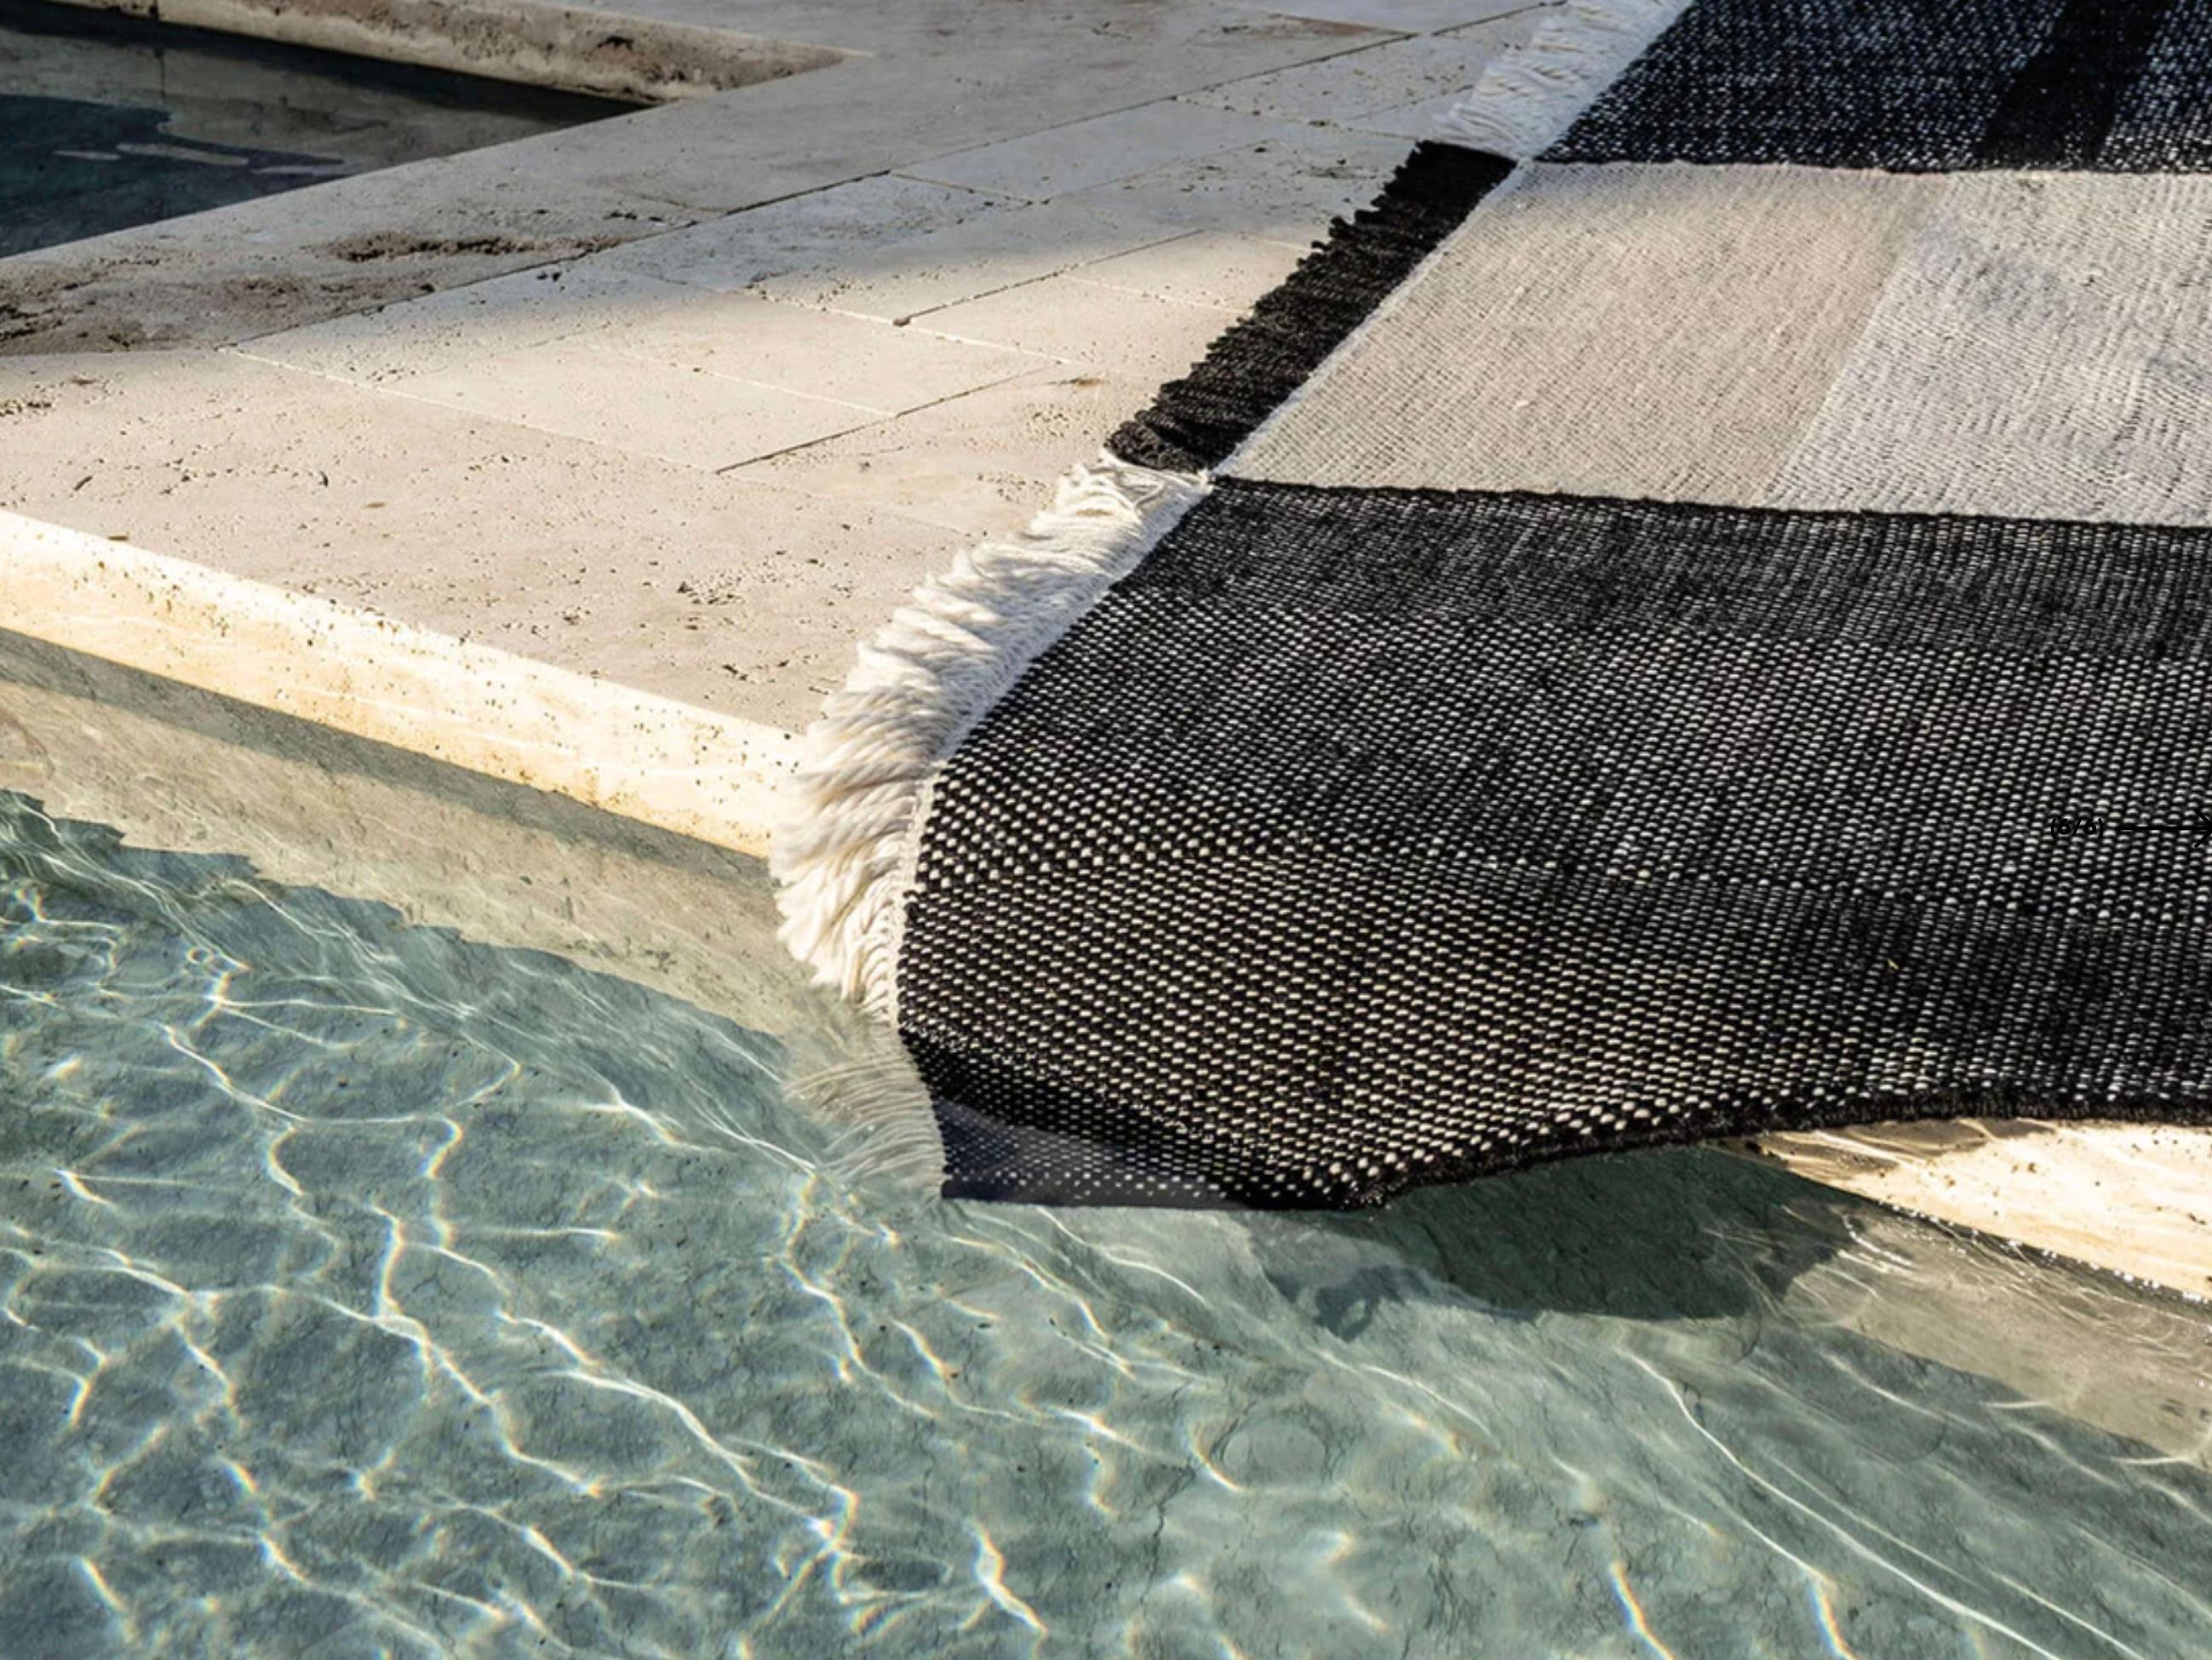 Nanis Marquina & Elisa Padrón 'Tres' Outdoor-Teppich 300x400cm, Aktuelle Produktion, Spanien. 

Tres Outdoor hat sich zum Ziel gesetzt, die Wärme der kultigen Tres Collection'S auf die Outdoor-Welt zu übertragen. Dieser Teppich für den Innenbereich